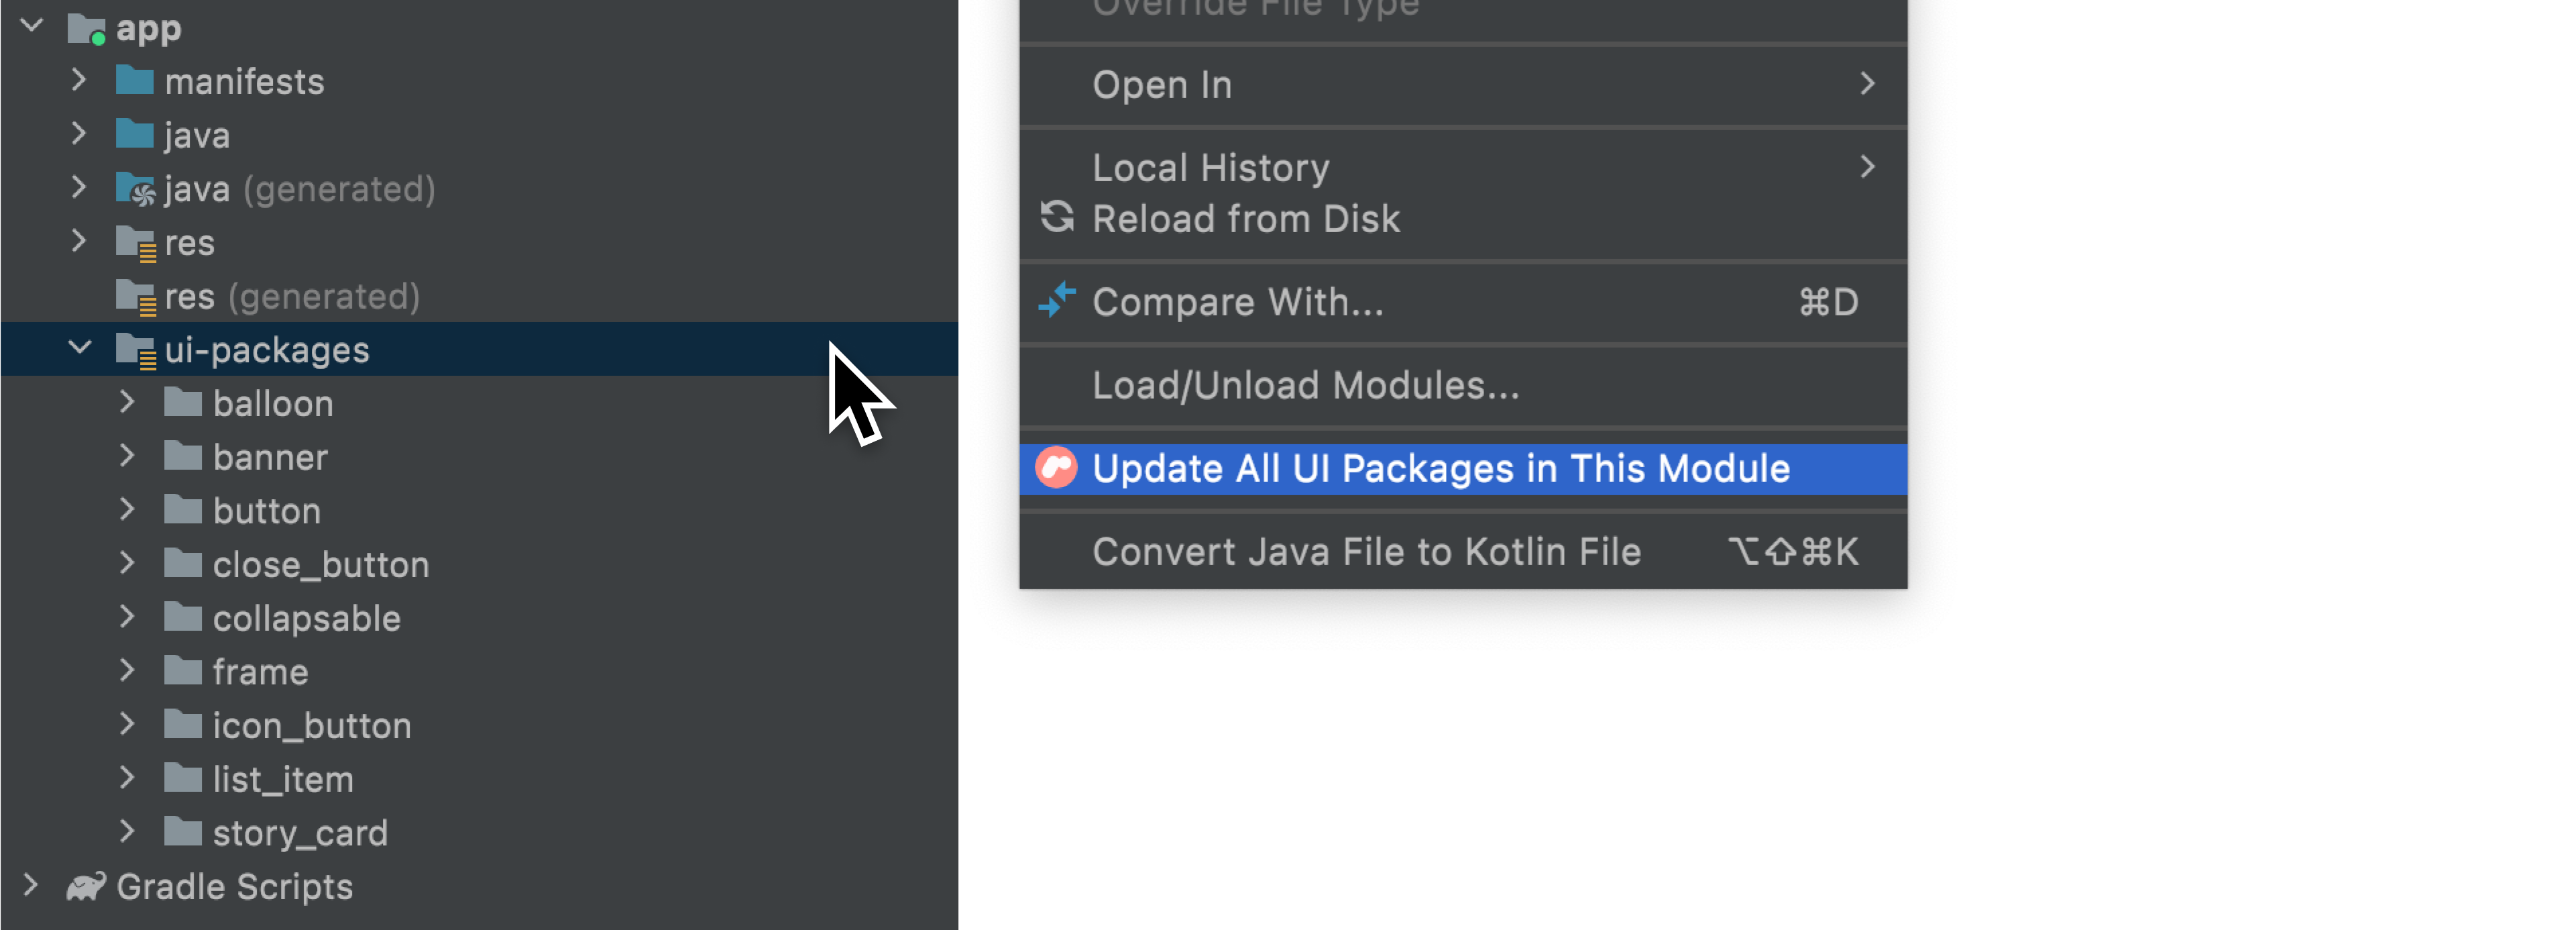 Opção Update All UI Packages no menu de contexto